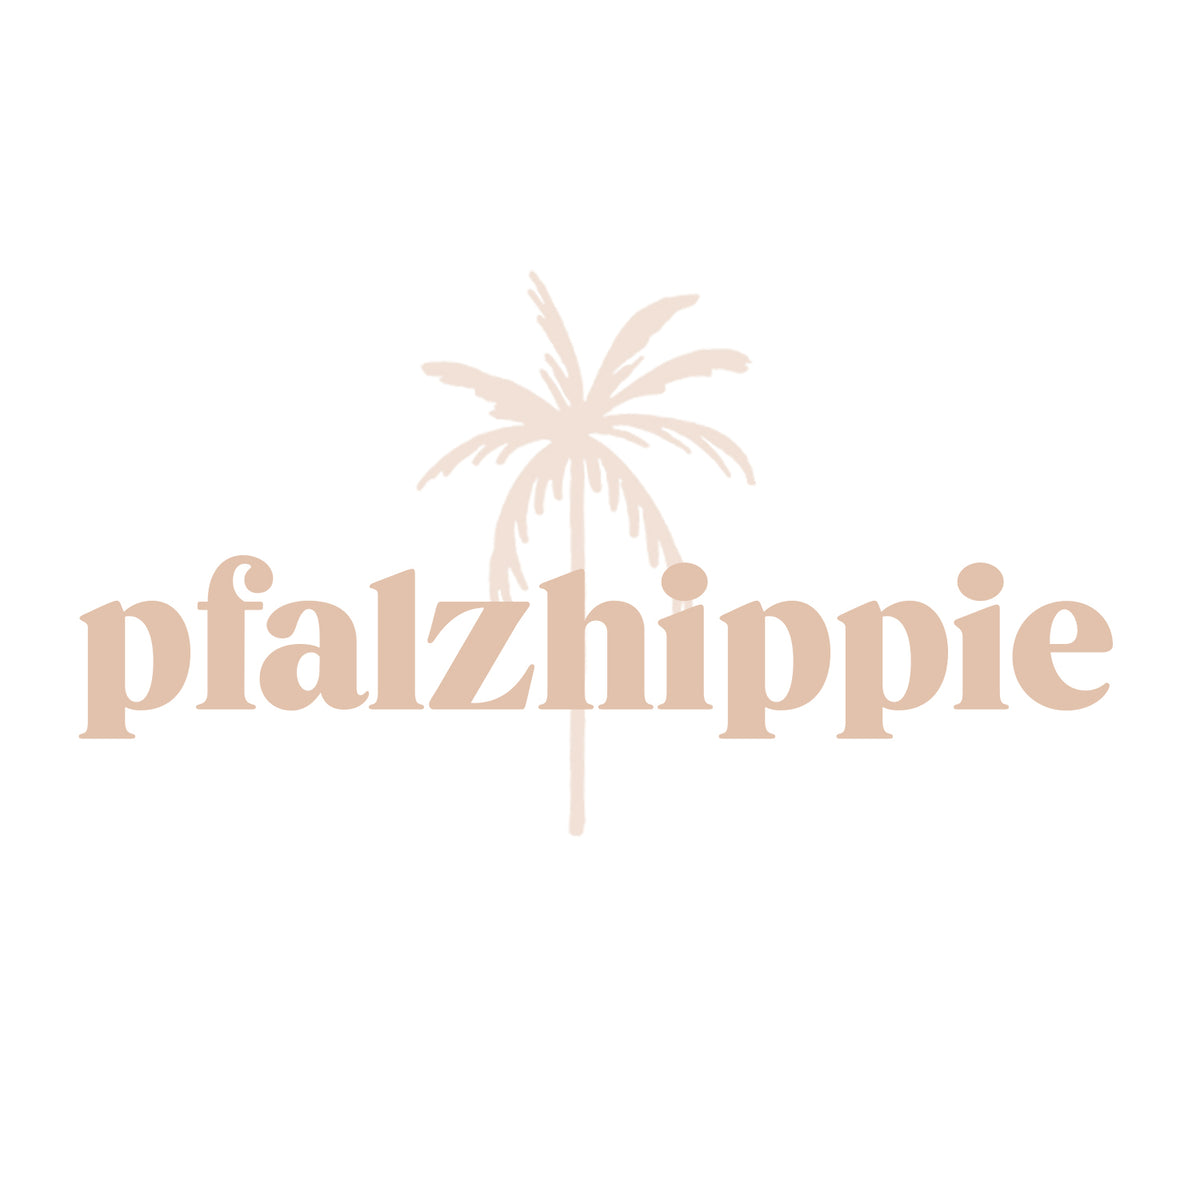 (c) Pfalzhippie.com